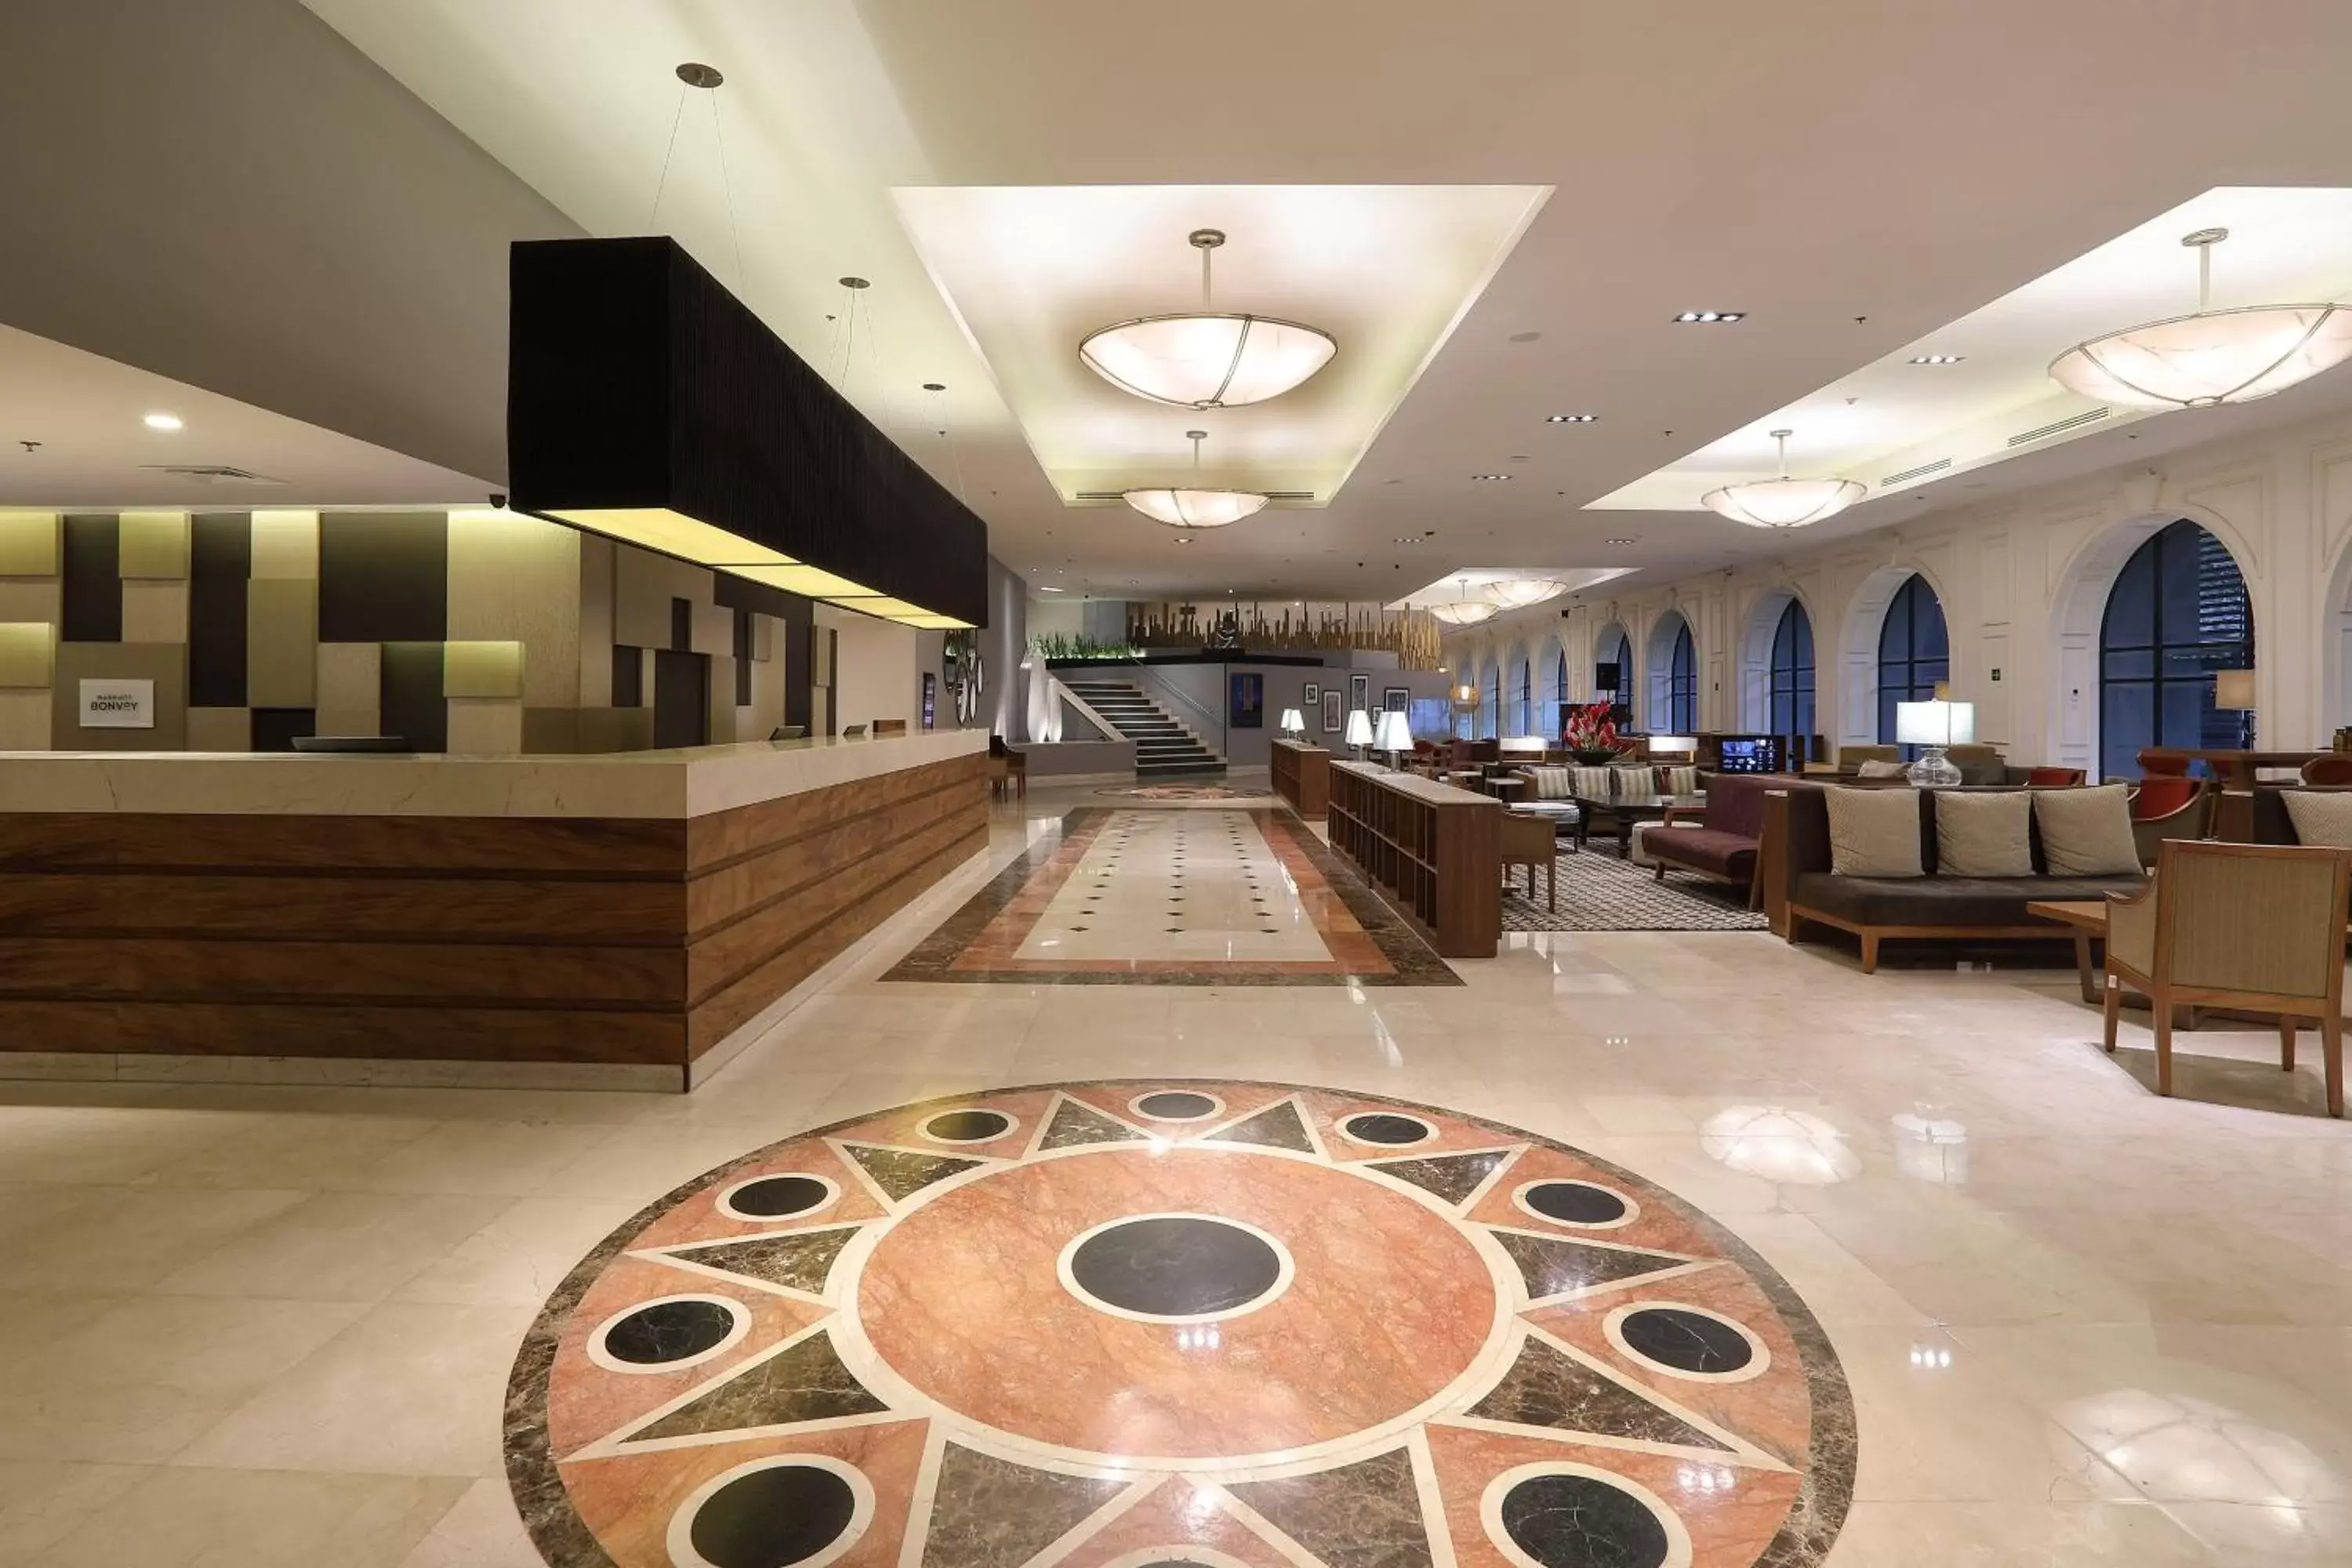 Lobby or reception in Villahermosa Marriott Hotel